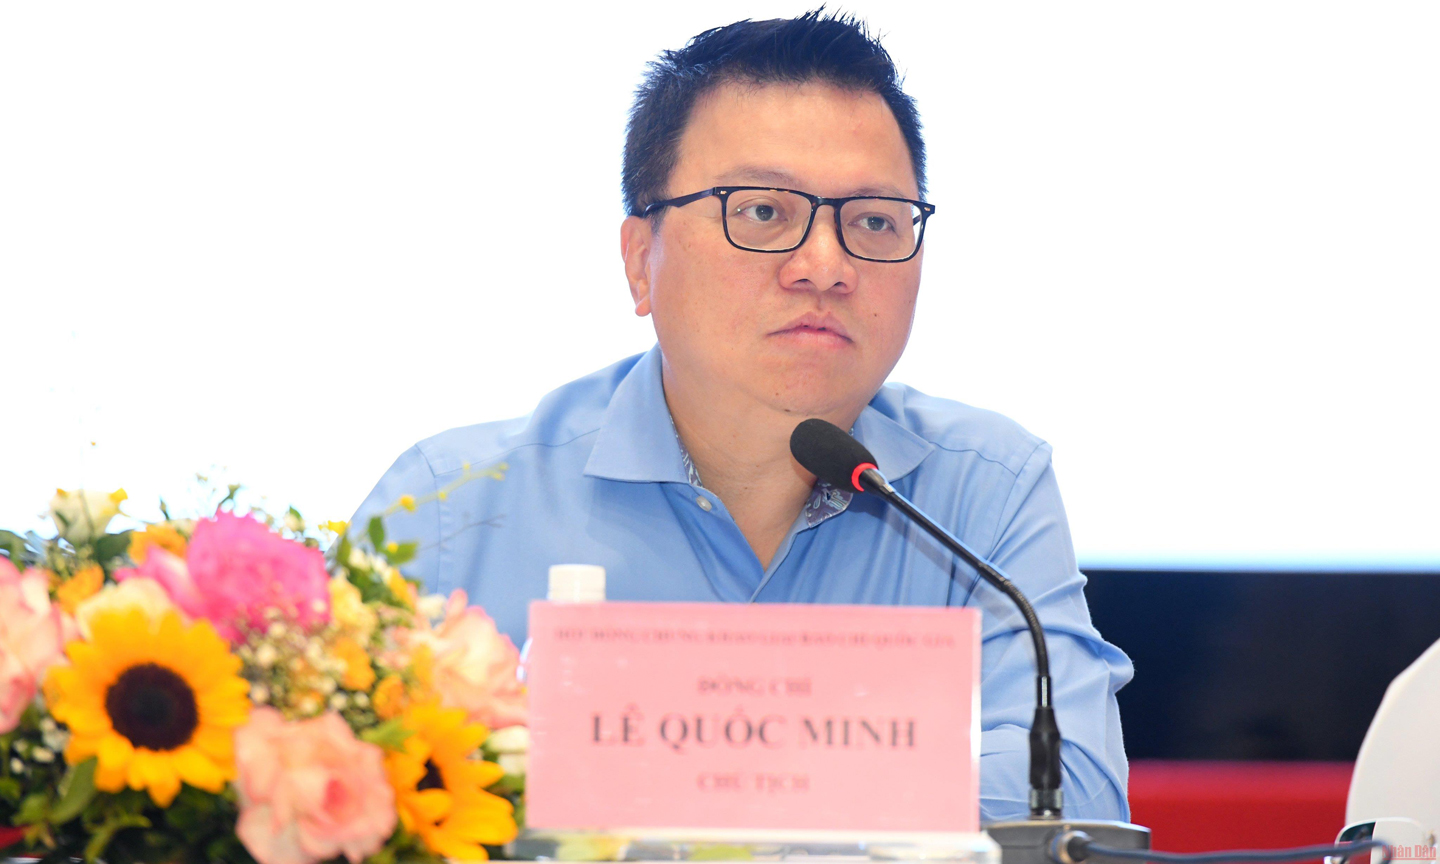 Đồng chí Lê Quốc Minh phát biểu tại Vòng chung khảo Giải Báo chí quốc gia lần thứ XVI - năm 2021. (Ảnh: THÀNH ĐẠT)